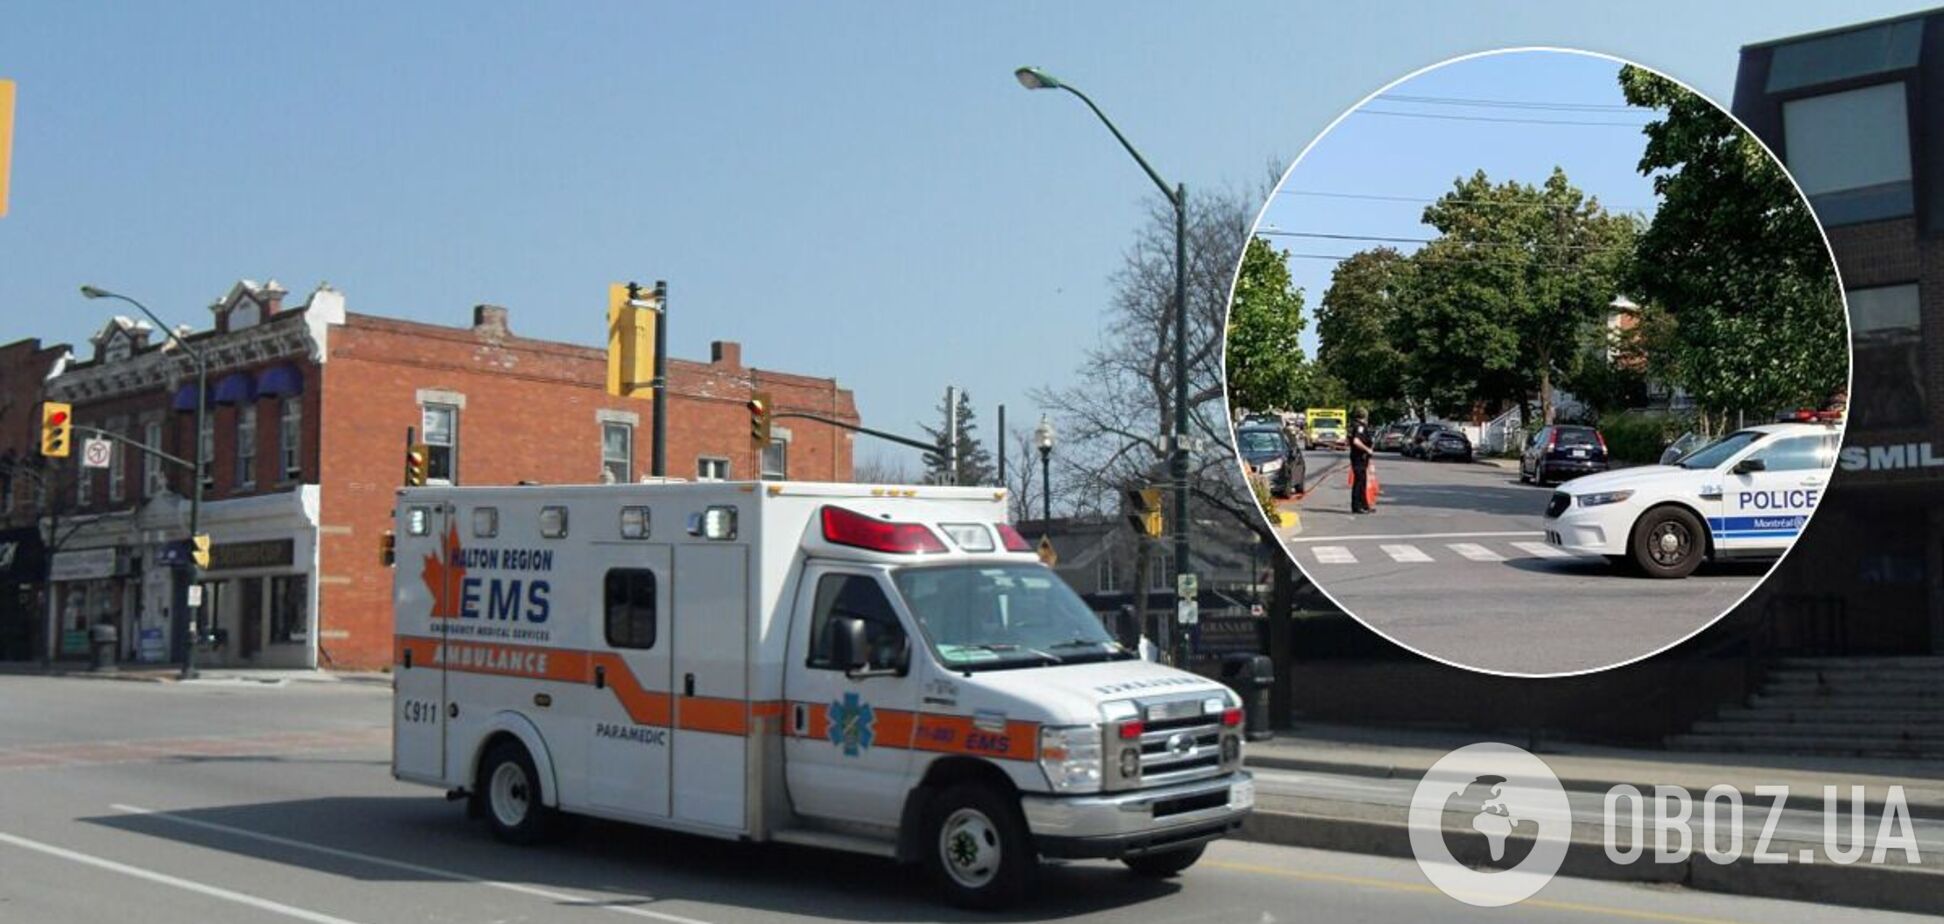 В результате наезда на пешеходов в Монреале пострадали 9 человек